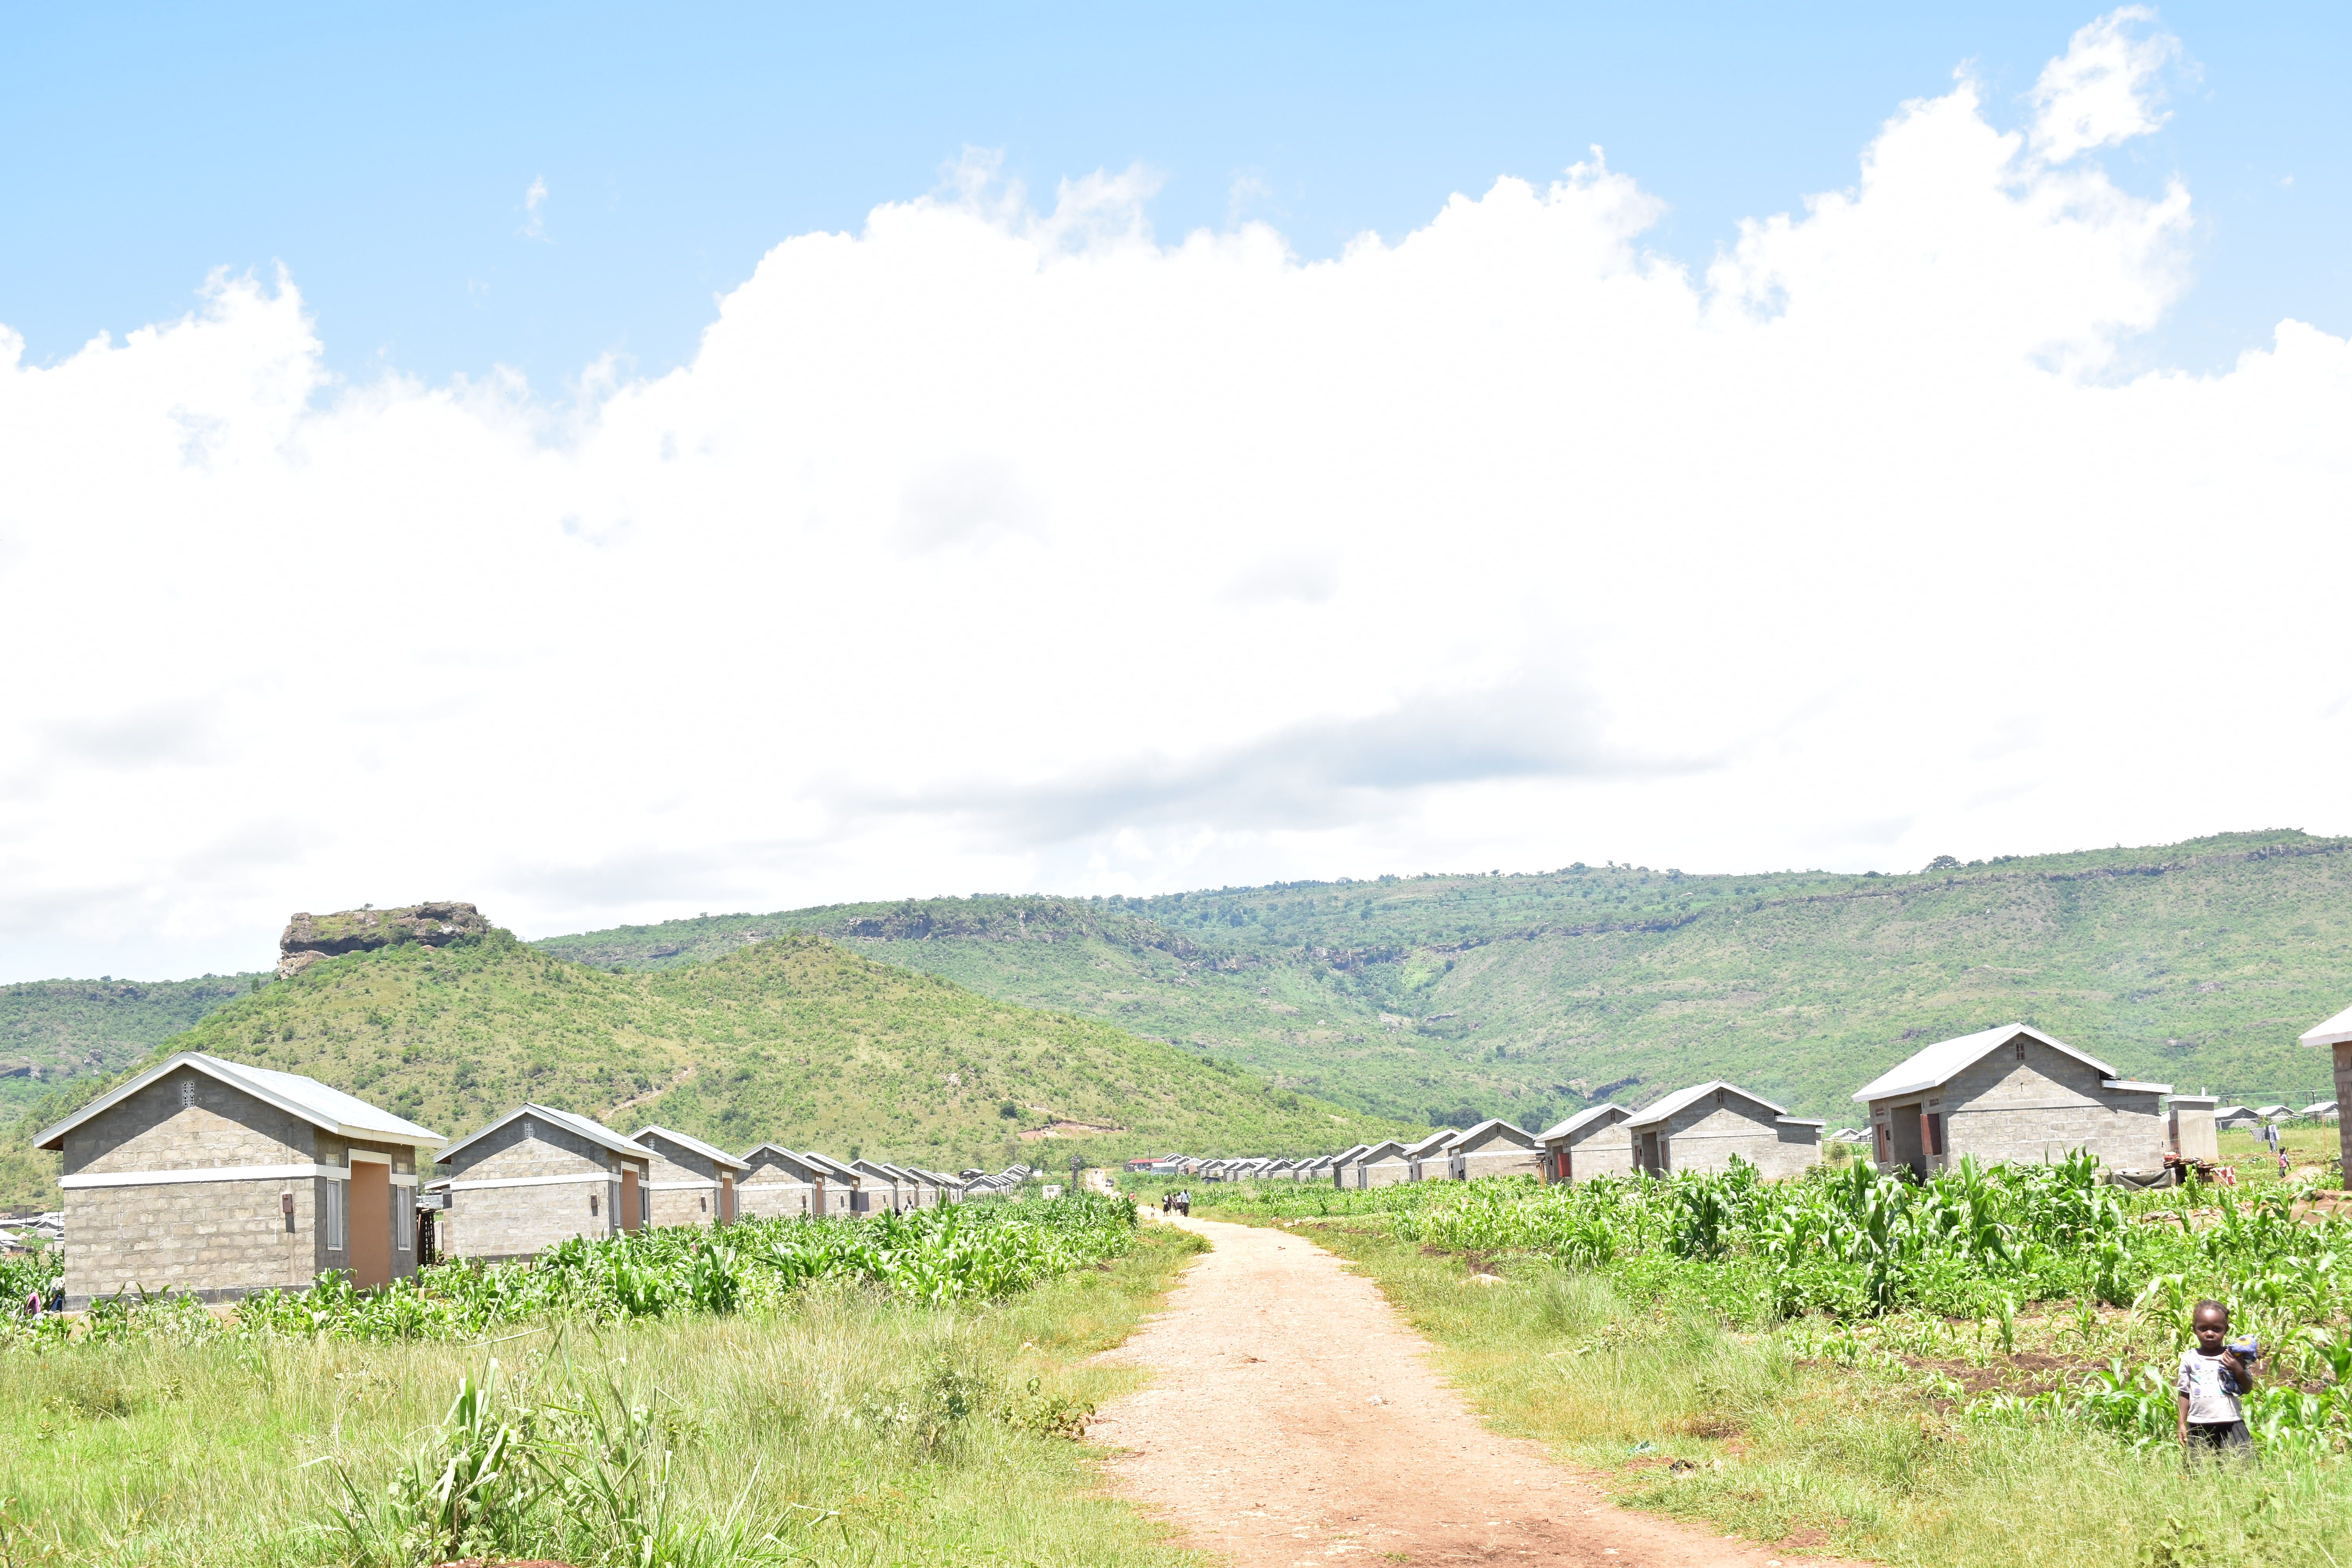 Bunambutye resettlement camp for Mt. Elgon landslides surivors. Image by by Javier Silas Omagor. Uganda, undated.